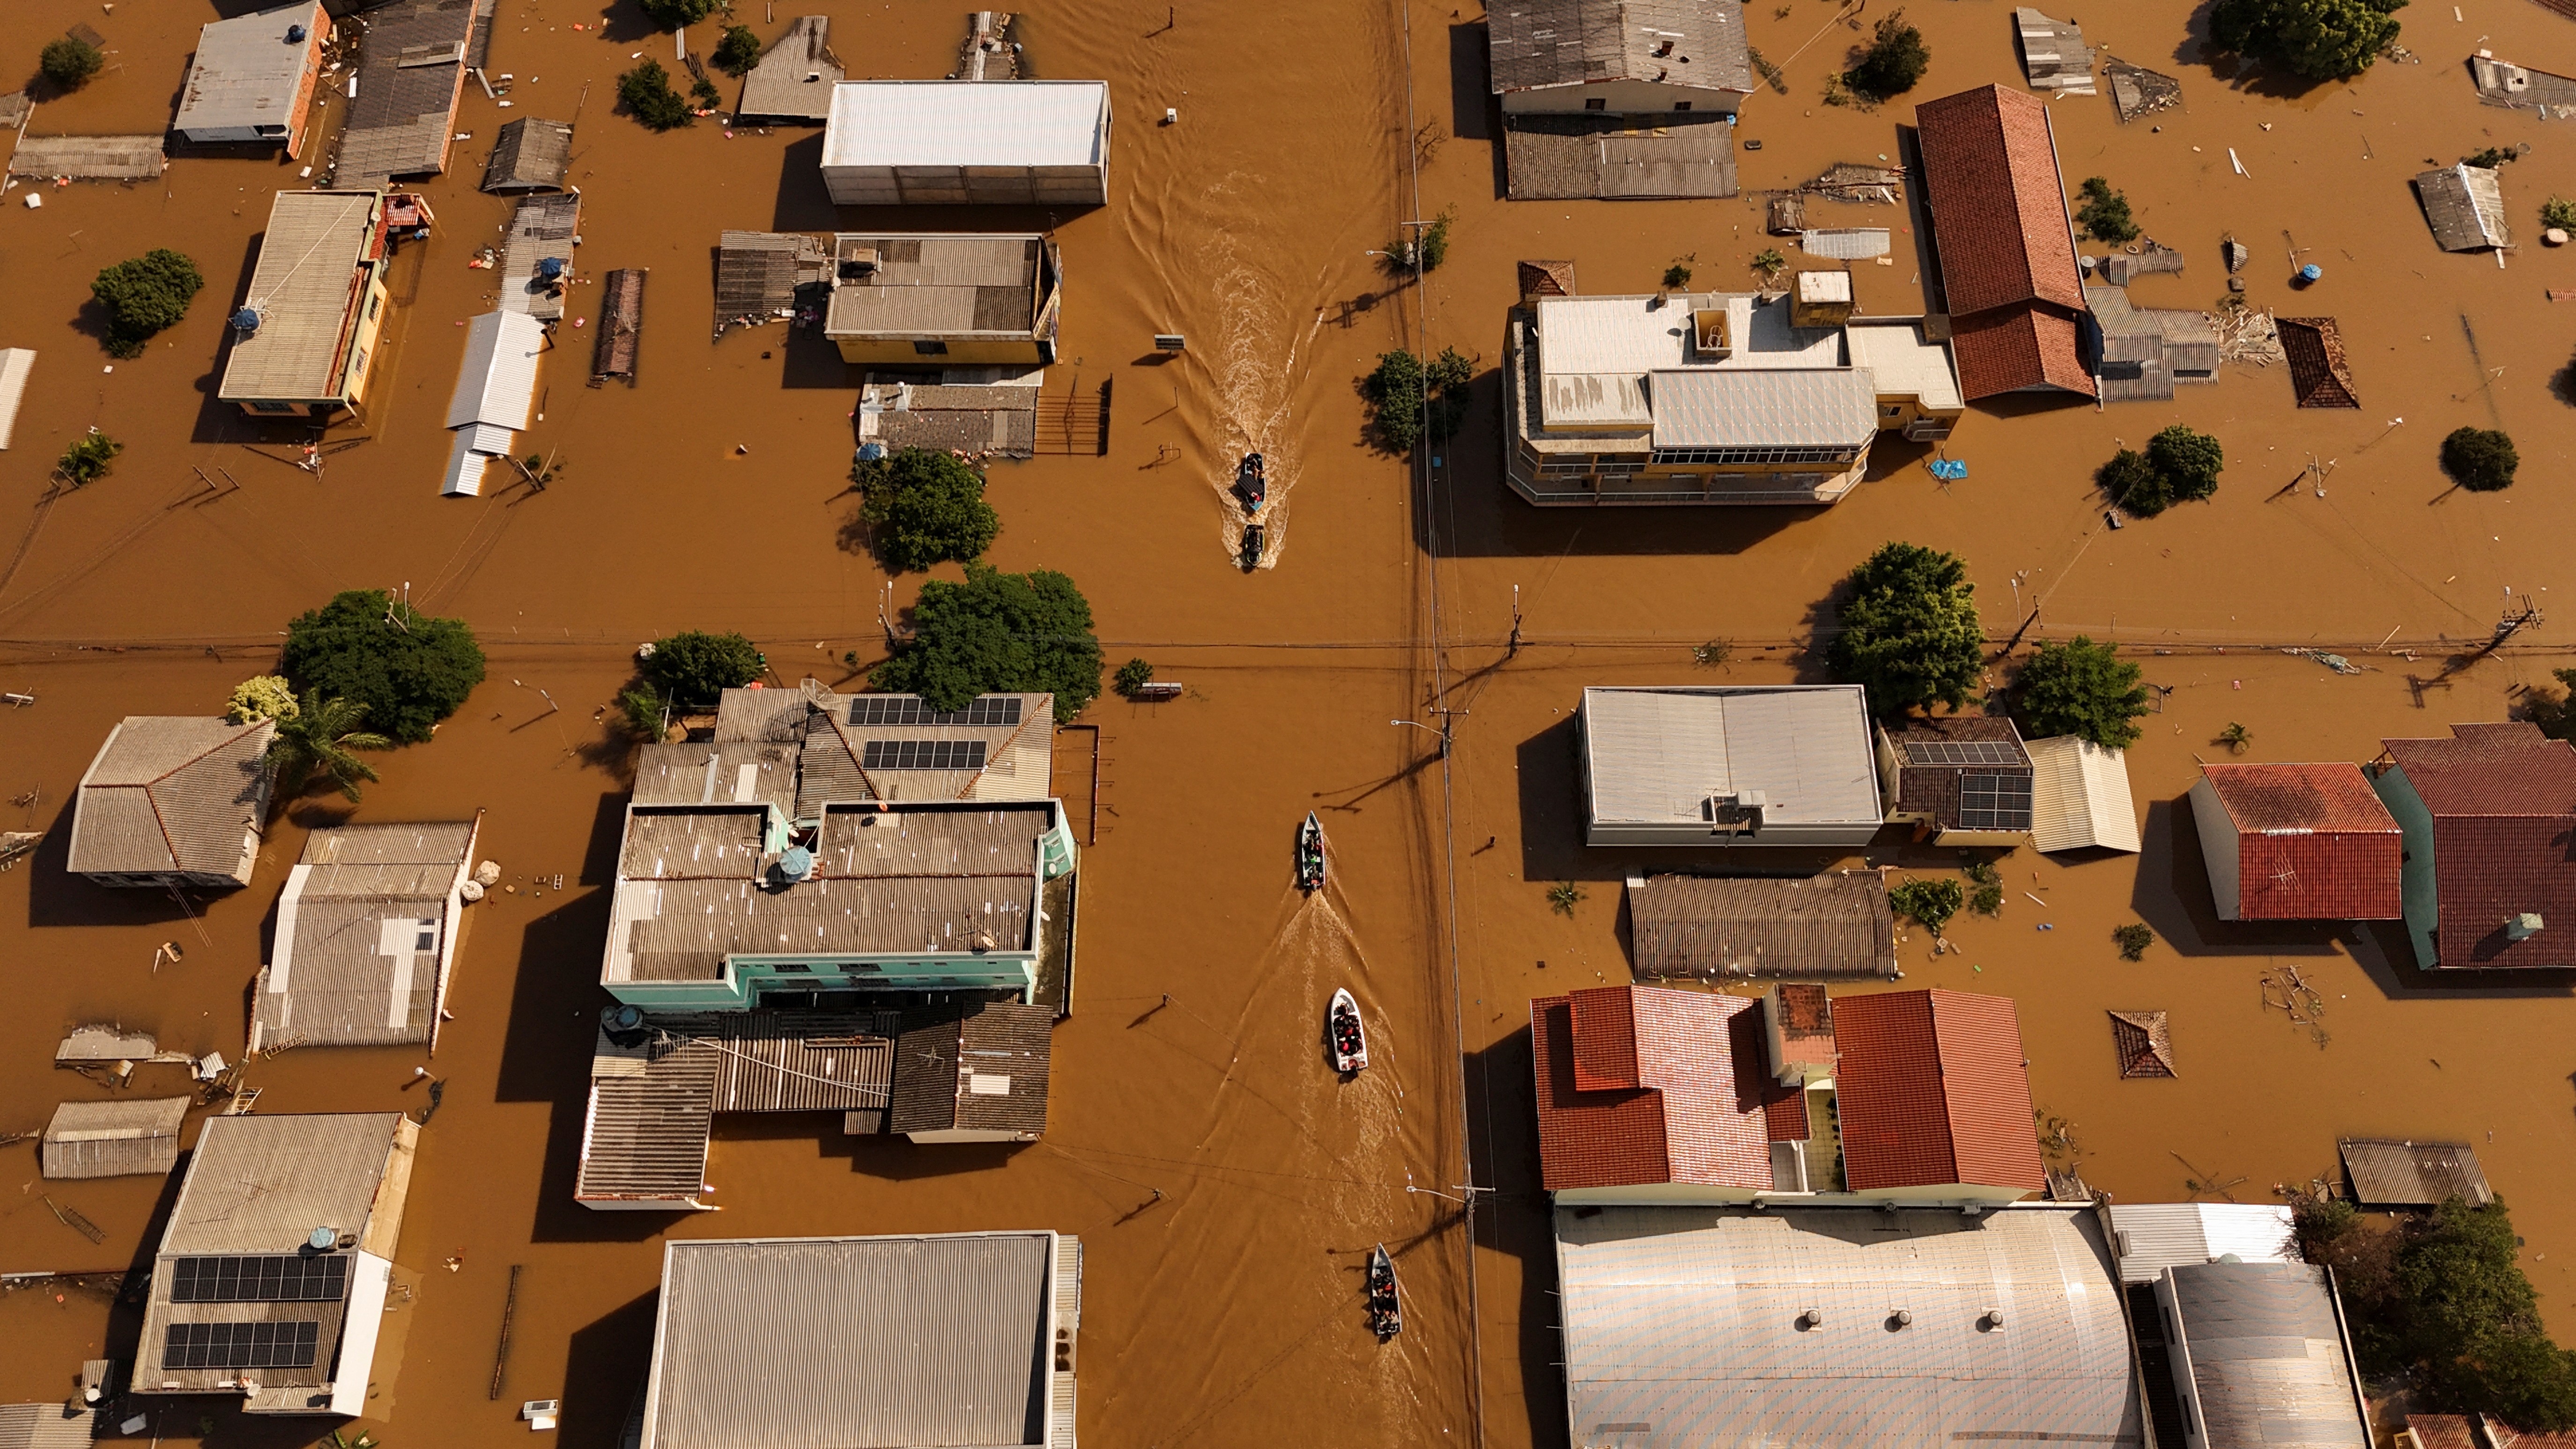 Casal paraense fala sobre resgate após temporais no Rio Grande do Sul: 'a gente saiu do prédio com água batendo no peito' 